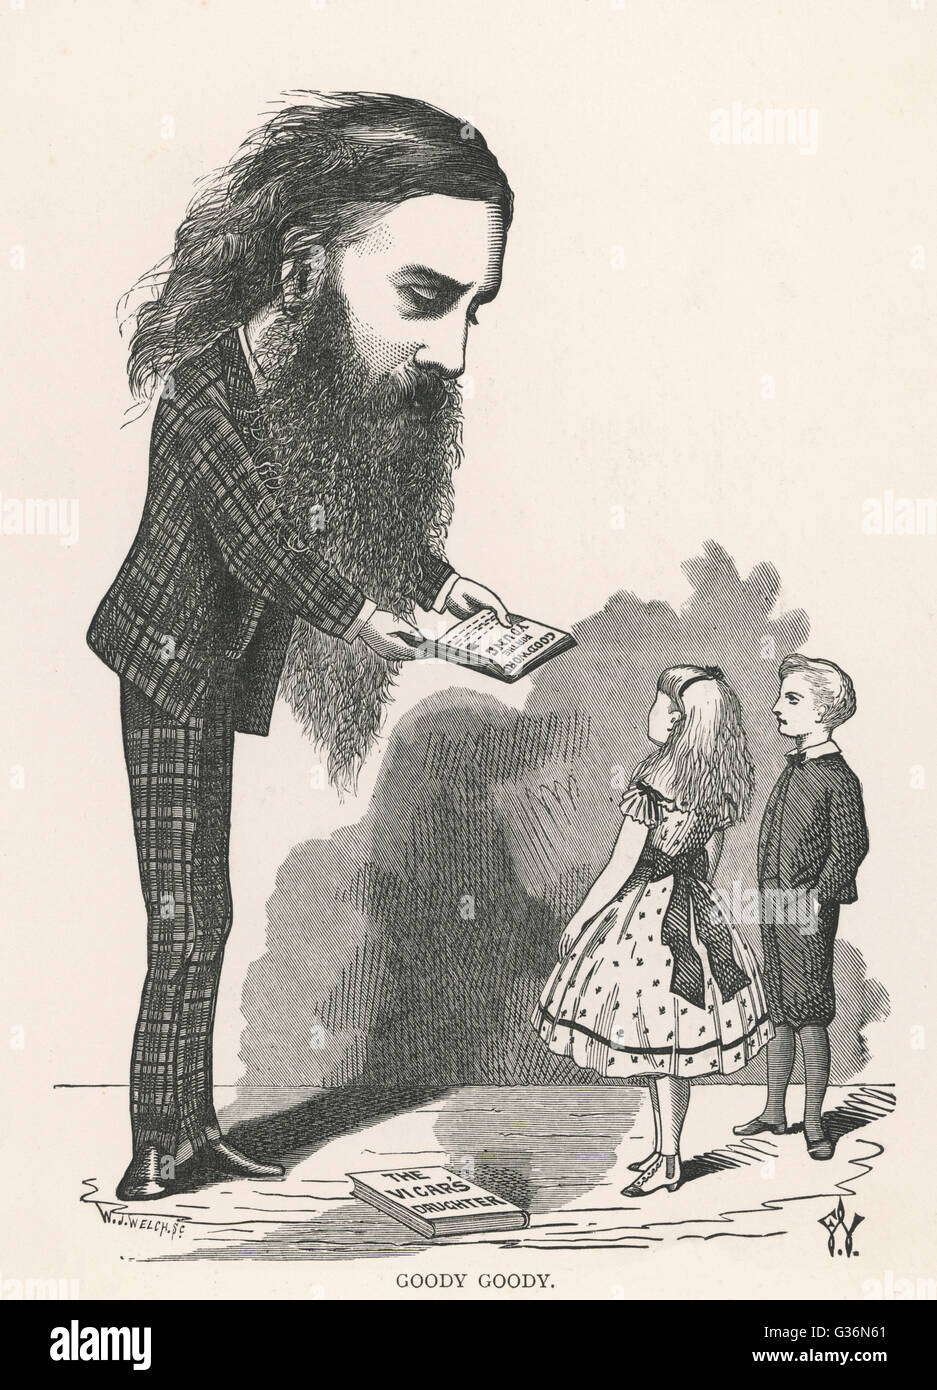 Un cartoon raffigurazione di George MacDonald (1824-1905), autore scozzese, poeta e ministro cristiano. I suoi libri per i bambini erano molto popolari. Data: 1873 Foto Stock